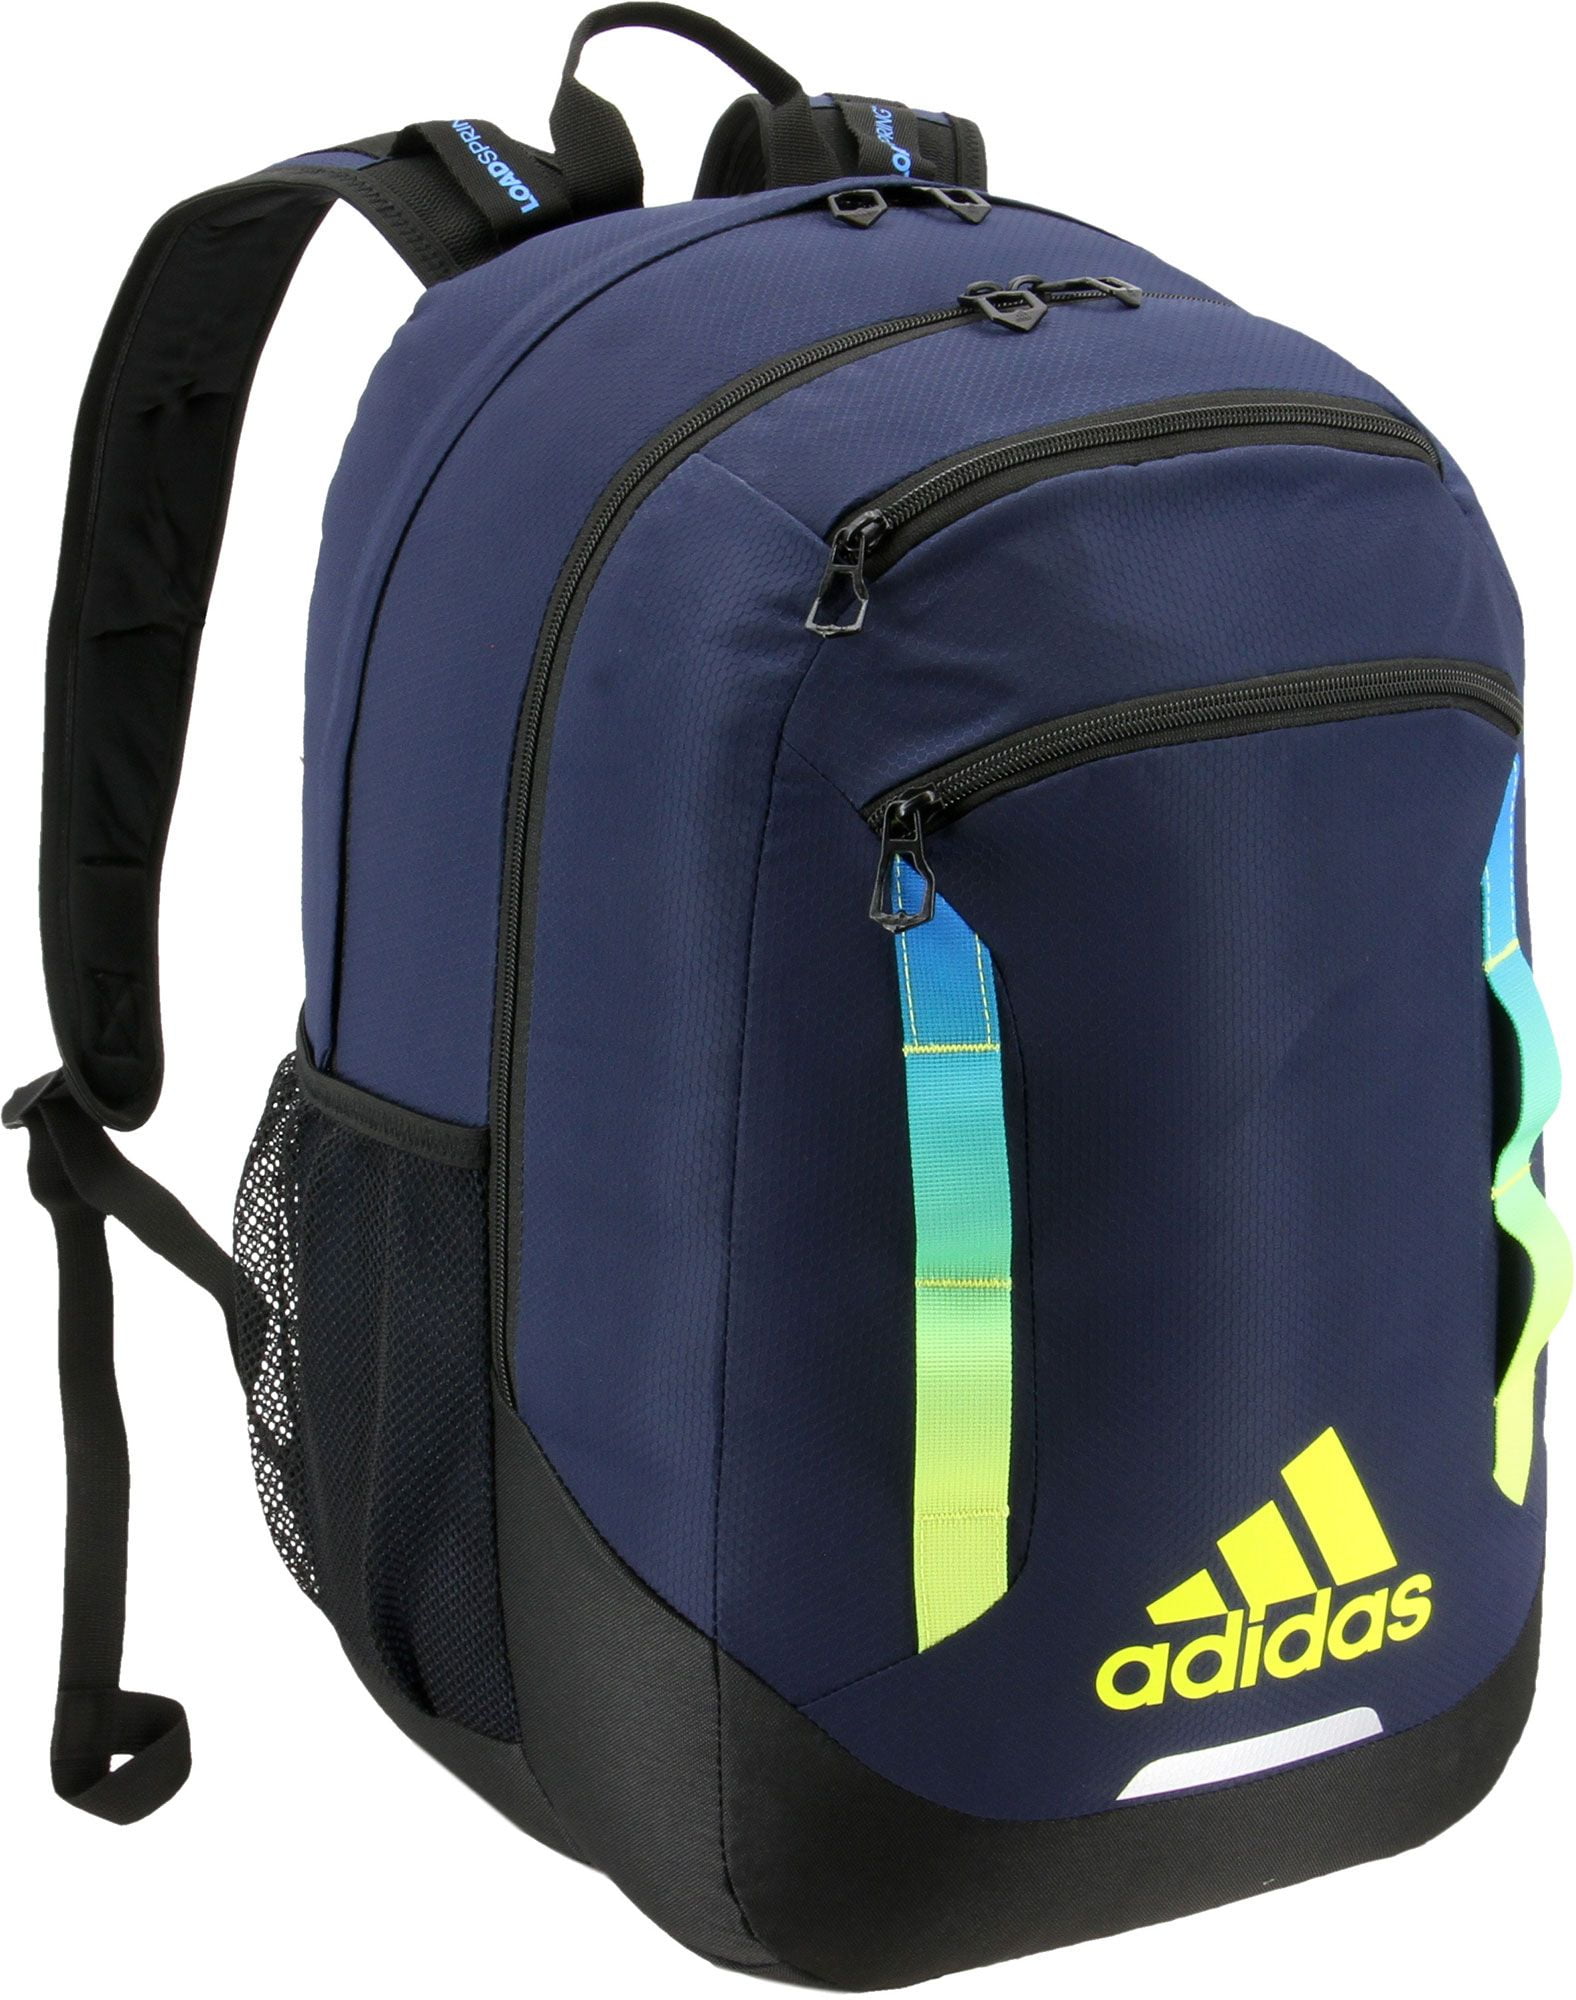 Adidas - adidas Rival XL Backpack 